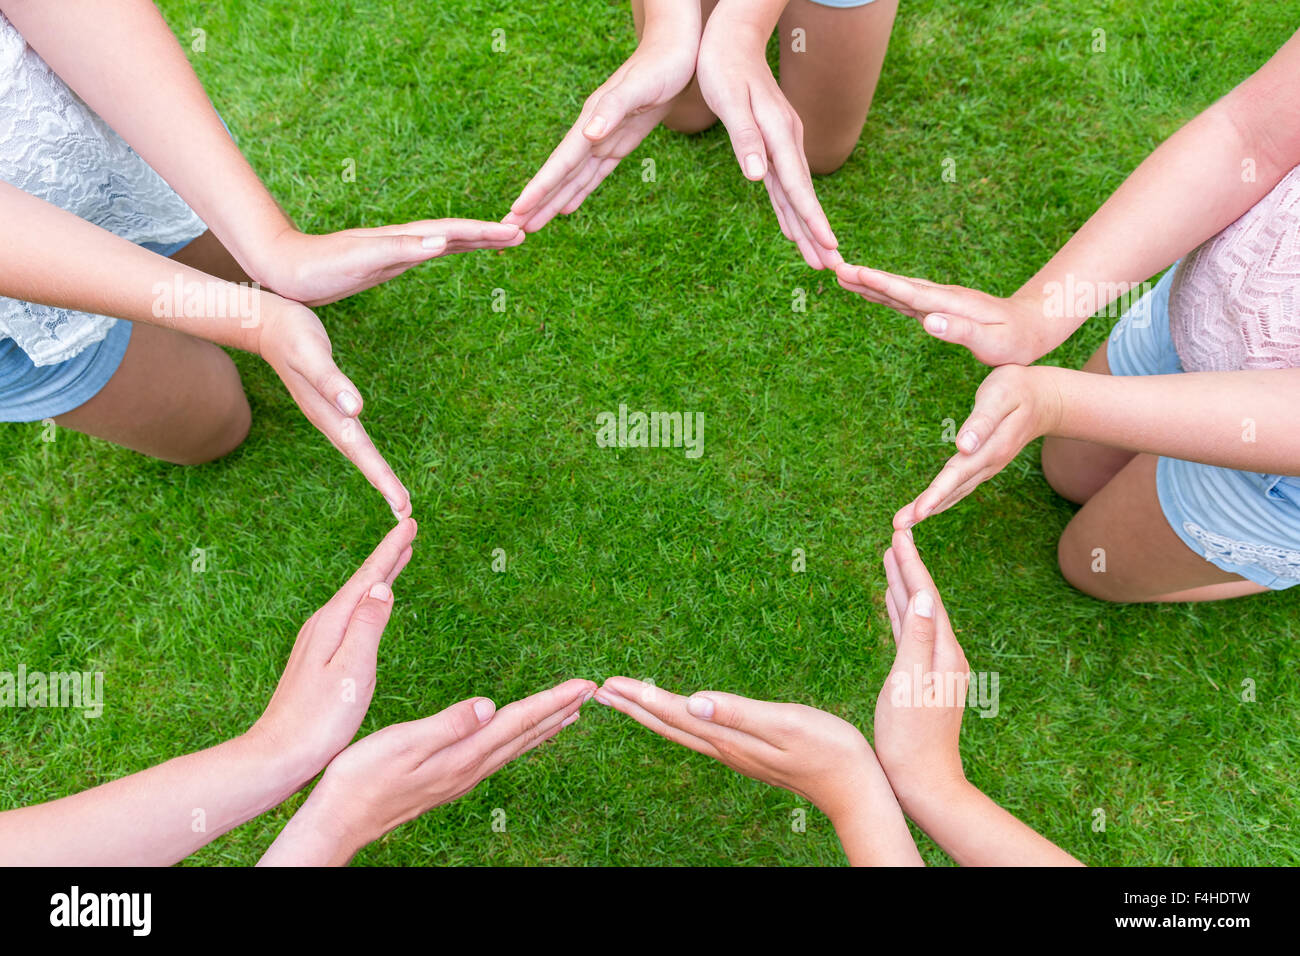 Los brazos de los niños con las manos haciendo forma de estrella sobre el pasto verde Foto de stock